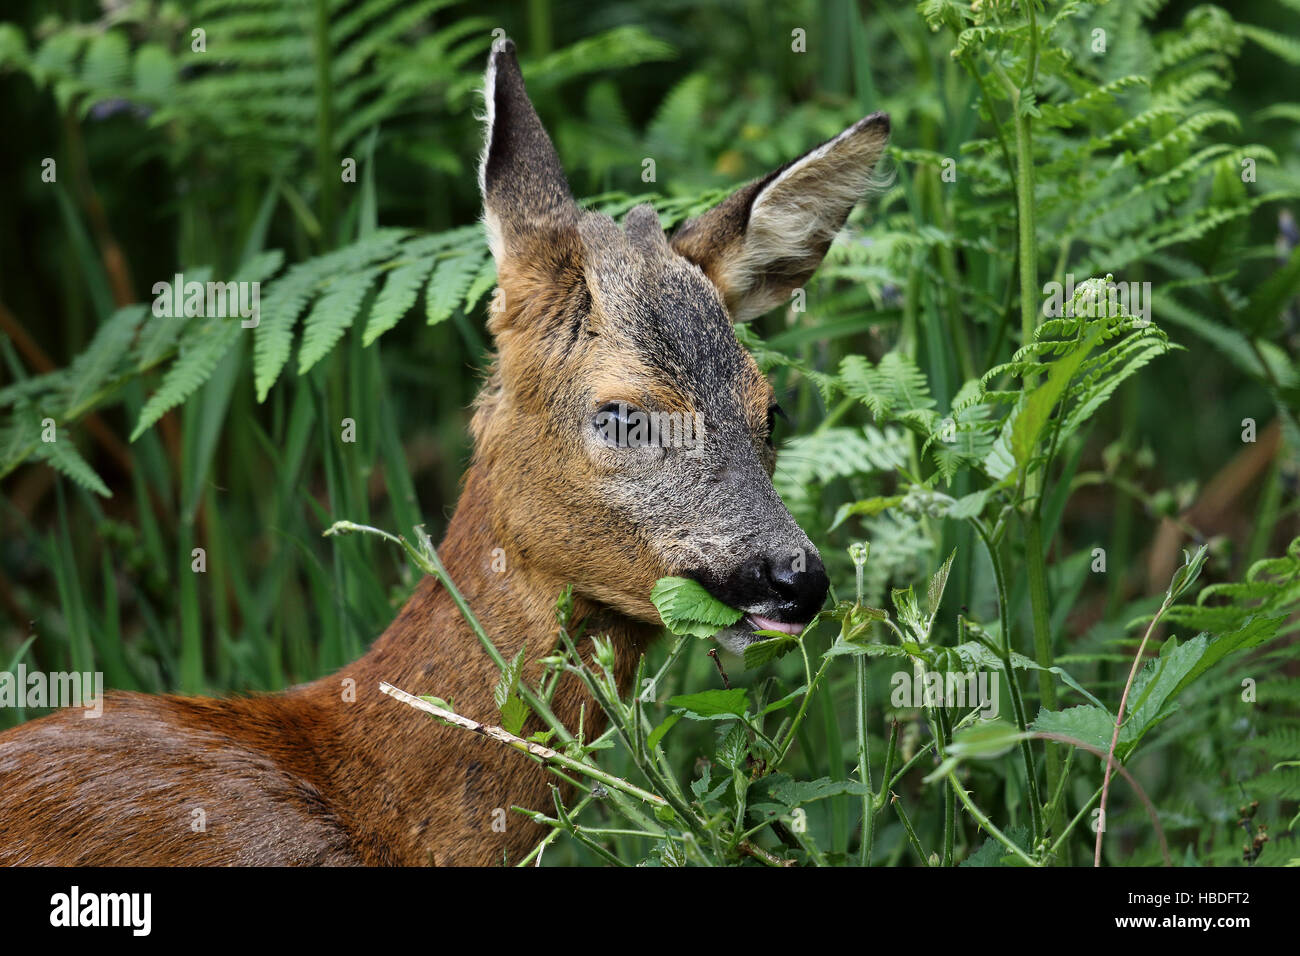 Roe Deer (Capreolus capreolus) eating leaves. Taken in Dumfries & Galloway, Scotland. Stock Photo